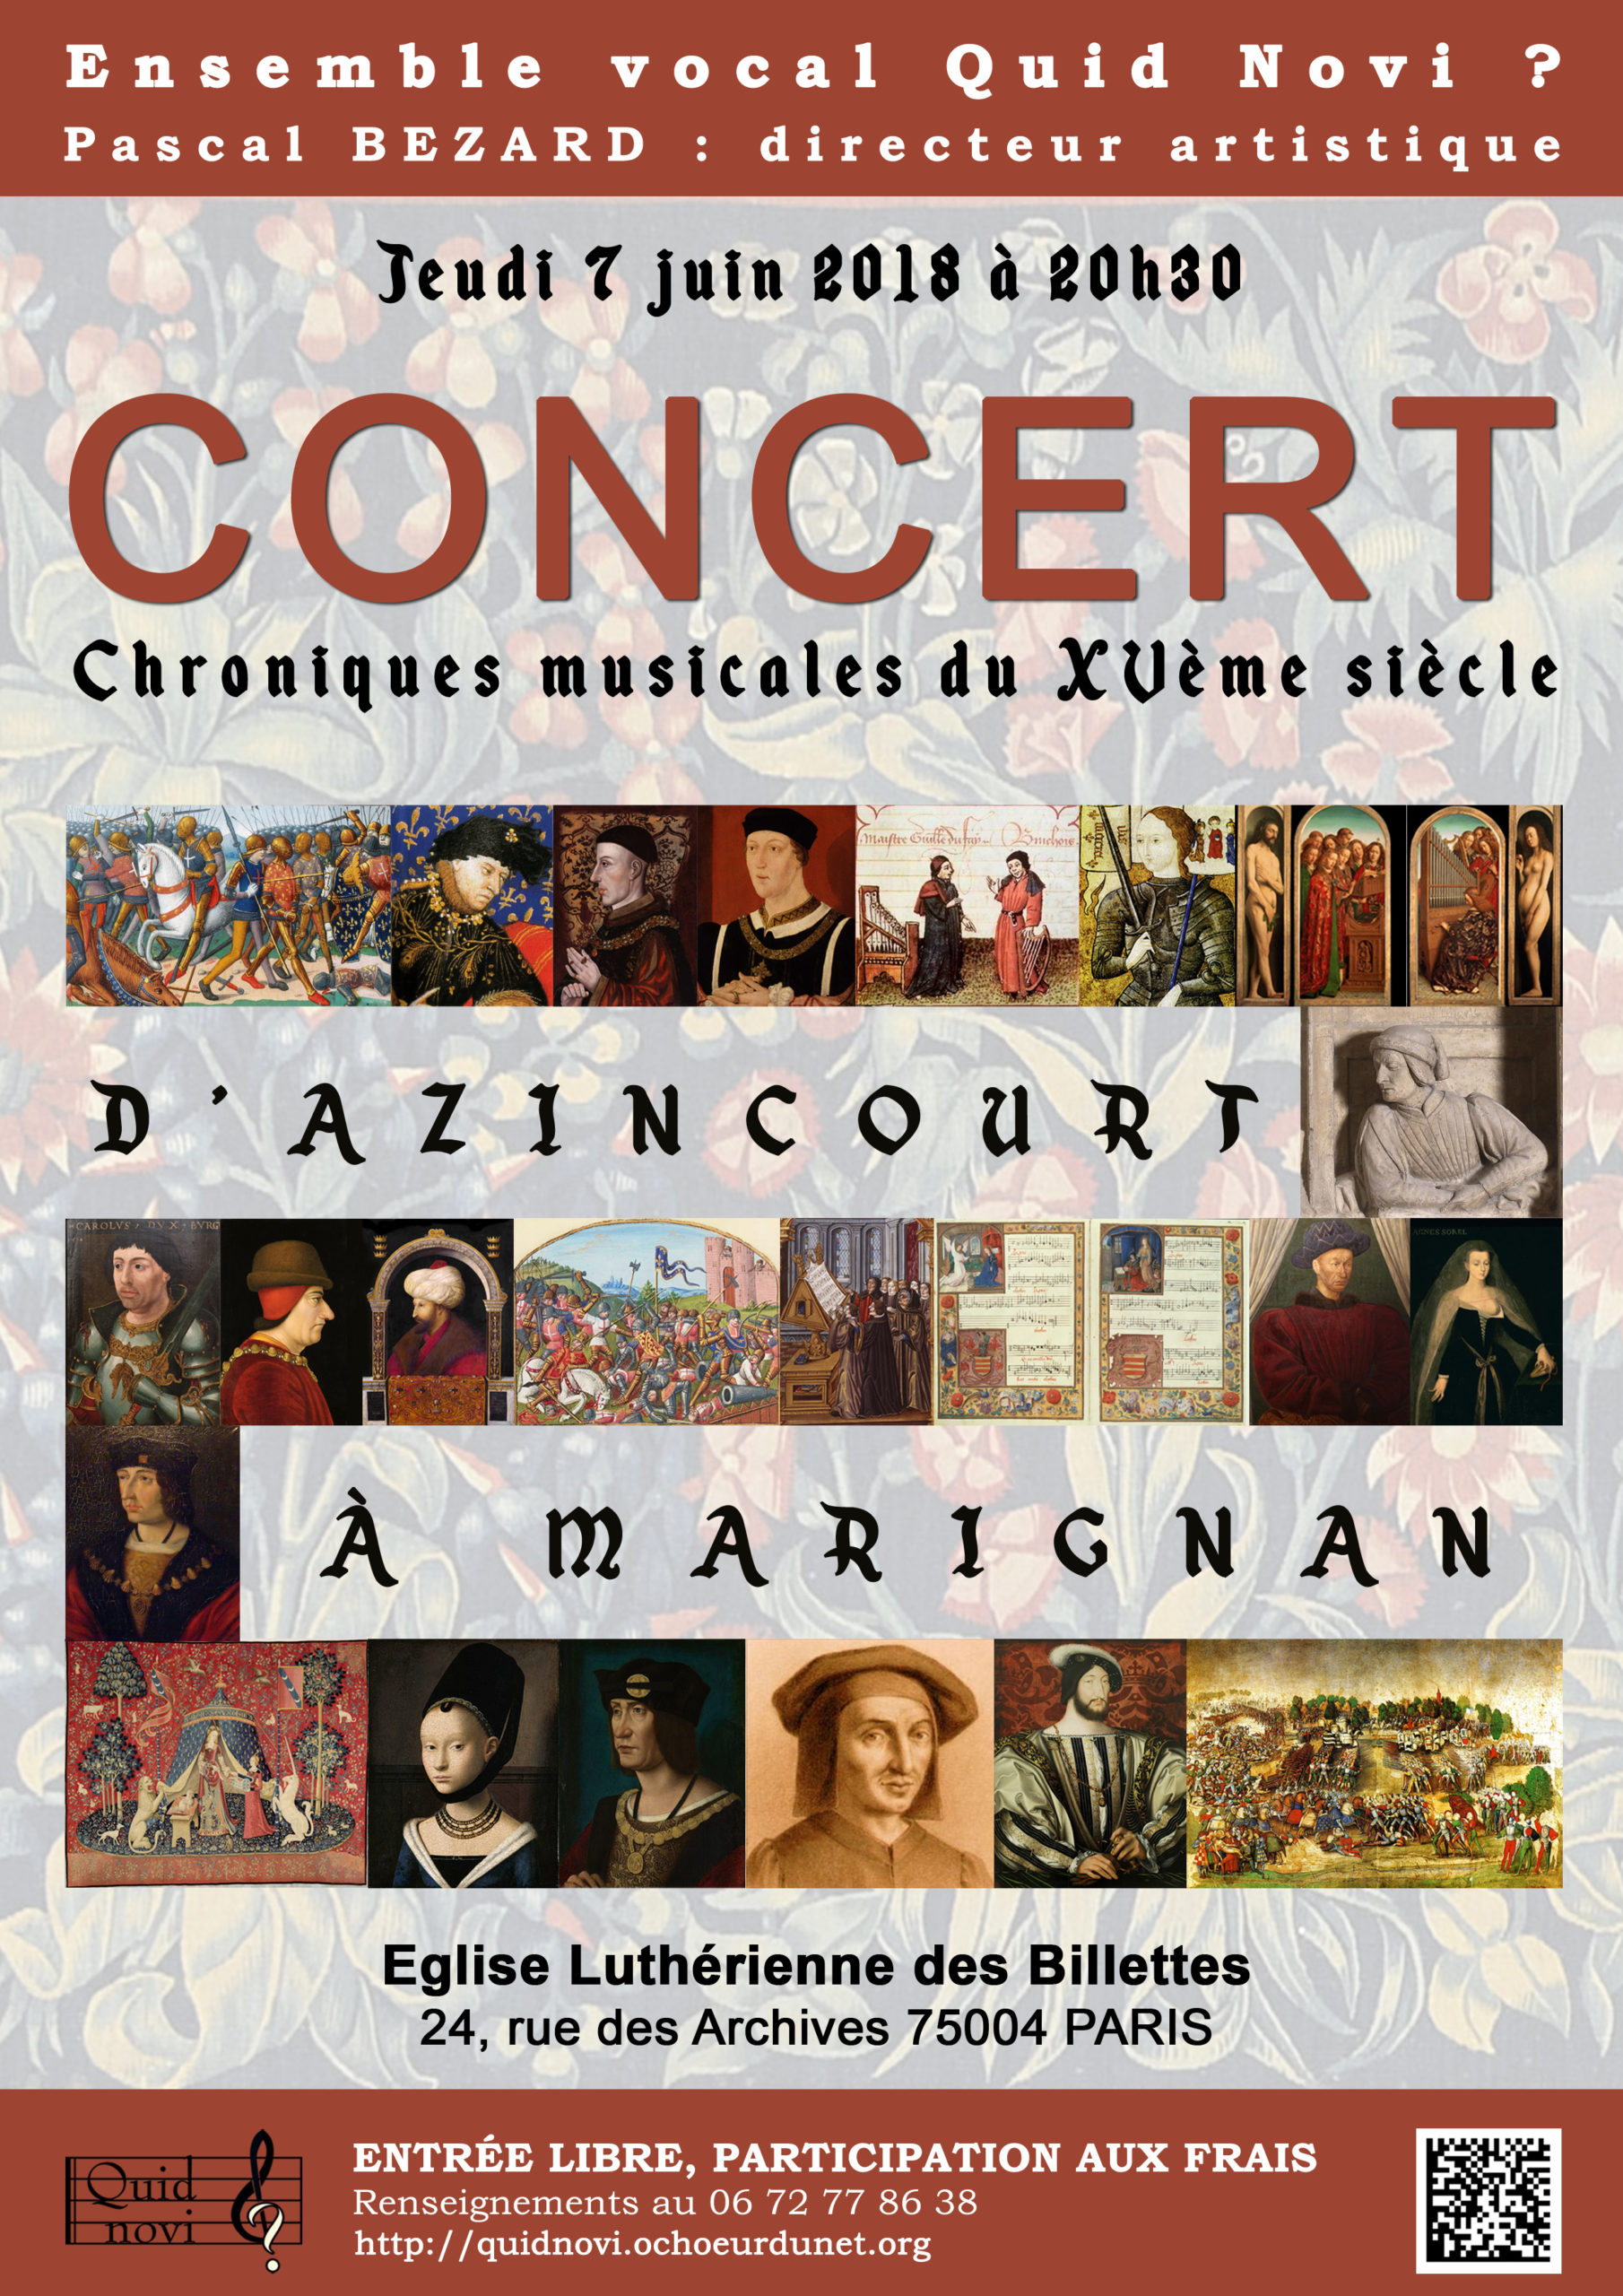 Chroniques musicales du 15ème siècle aux Billettes